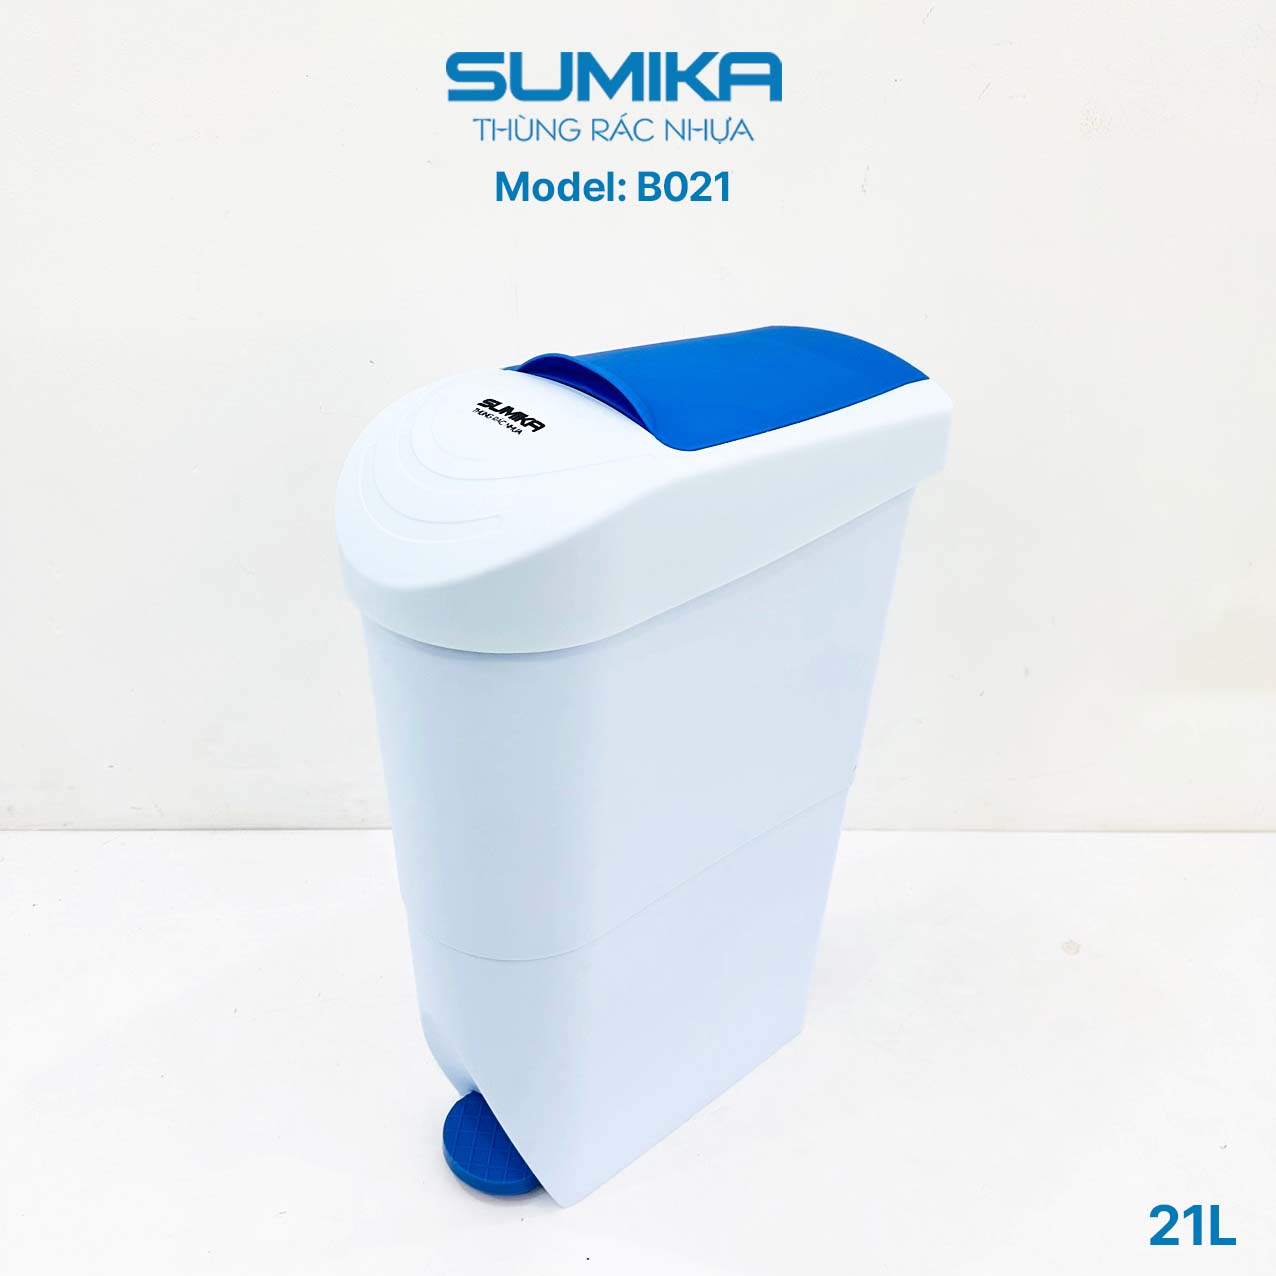 Thùng rác nhựa Toilet SUMIKA B021, dung tích 21L